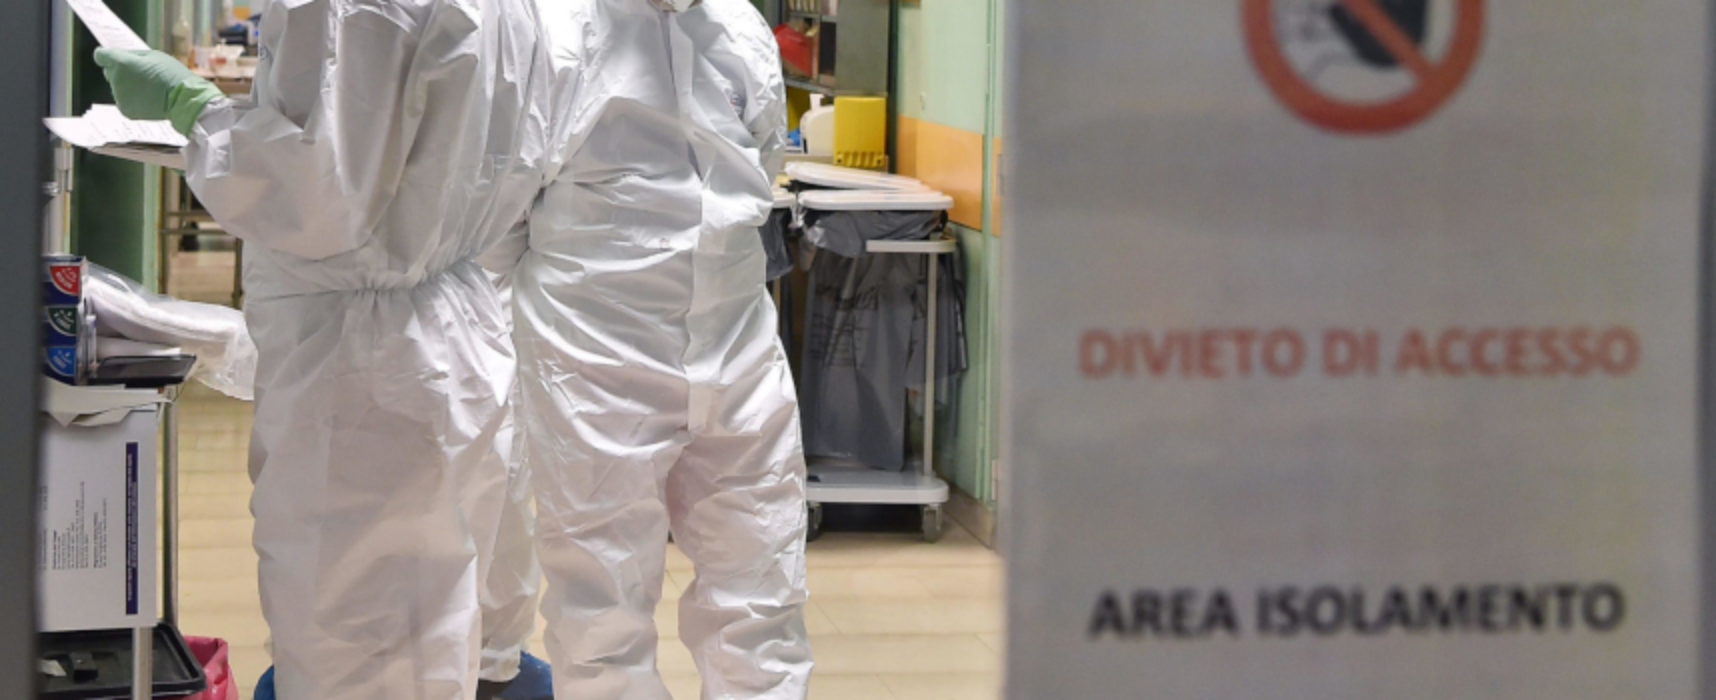 Coronavirus: oggi 1240 nuovi casi in Puglia, nessun decesso, leggero calo attuali postivi